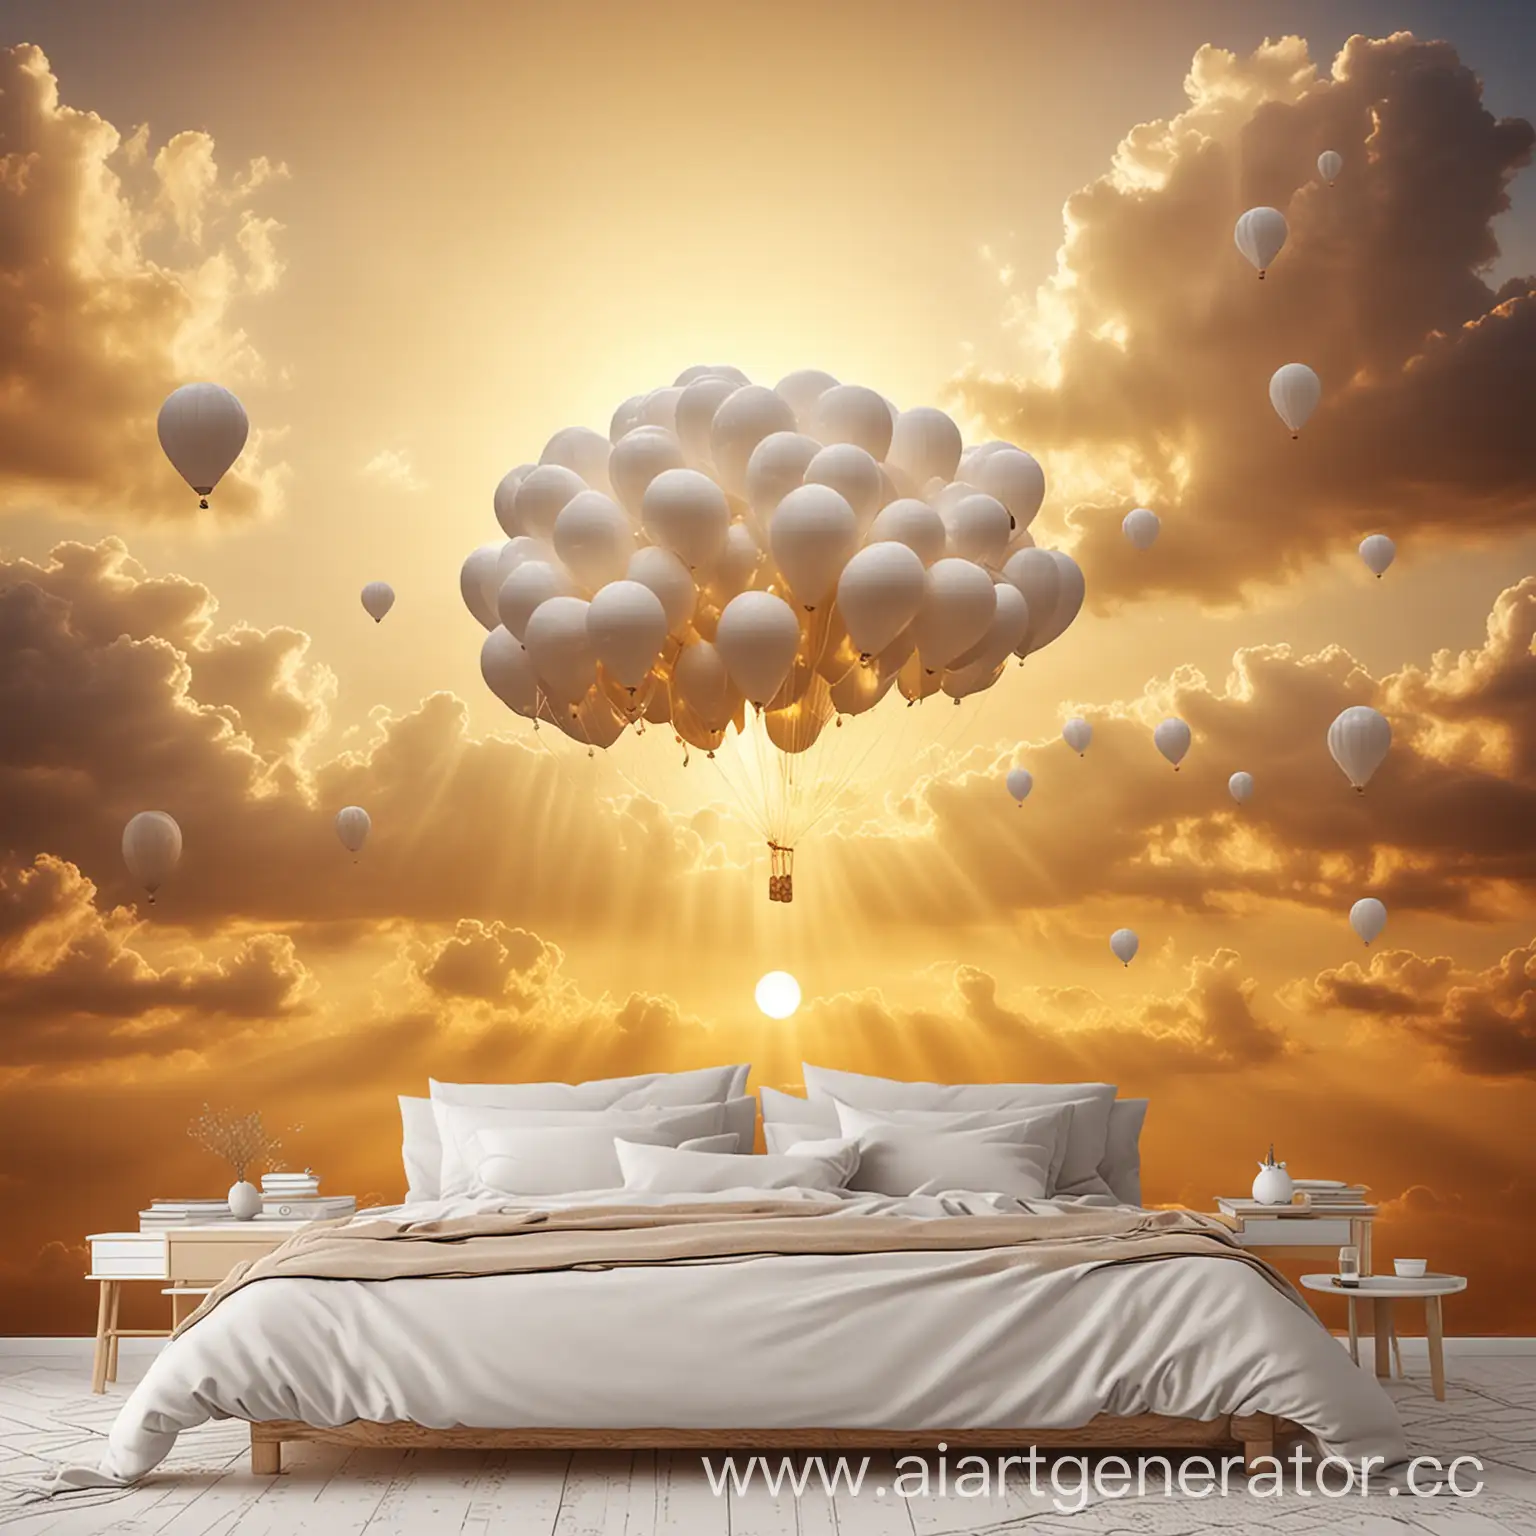  белые гелевые воздушные шарики в форме облака, с золотой дымкой, на фоне неба, закатные нежные золотые лучи. нежная картинка, уютная картинка, полная света и белых оттенков